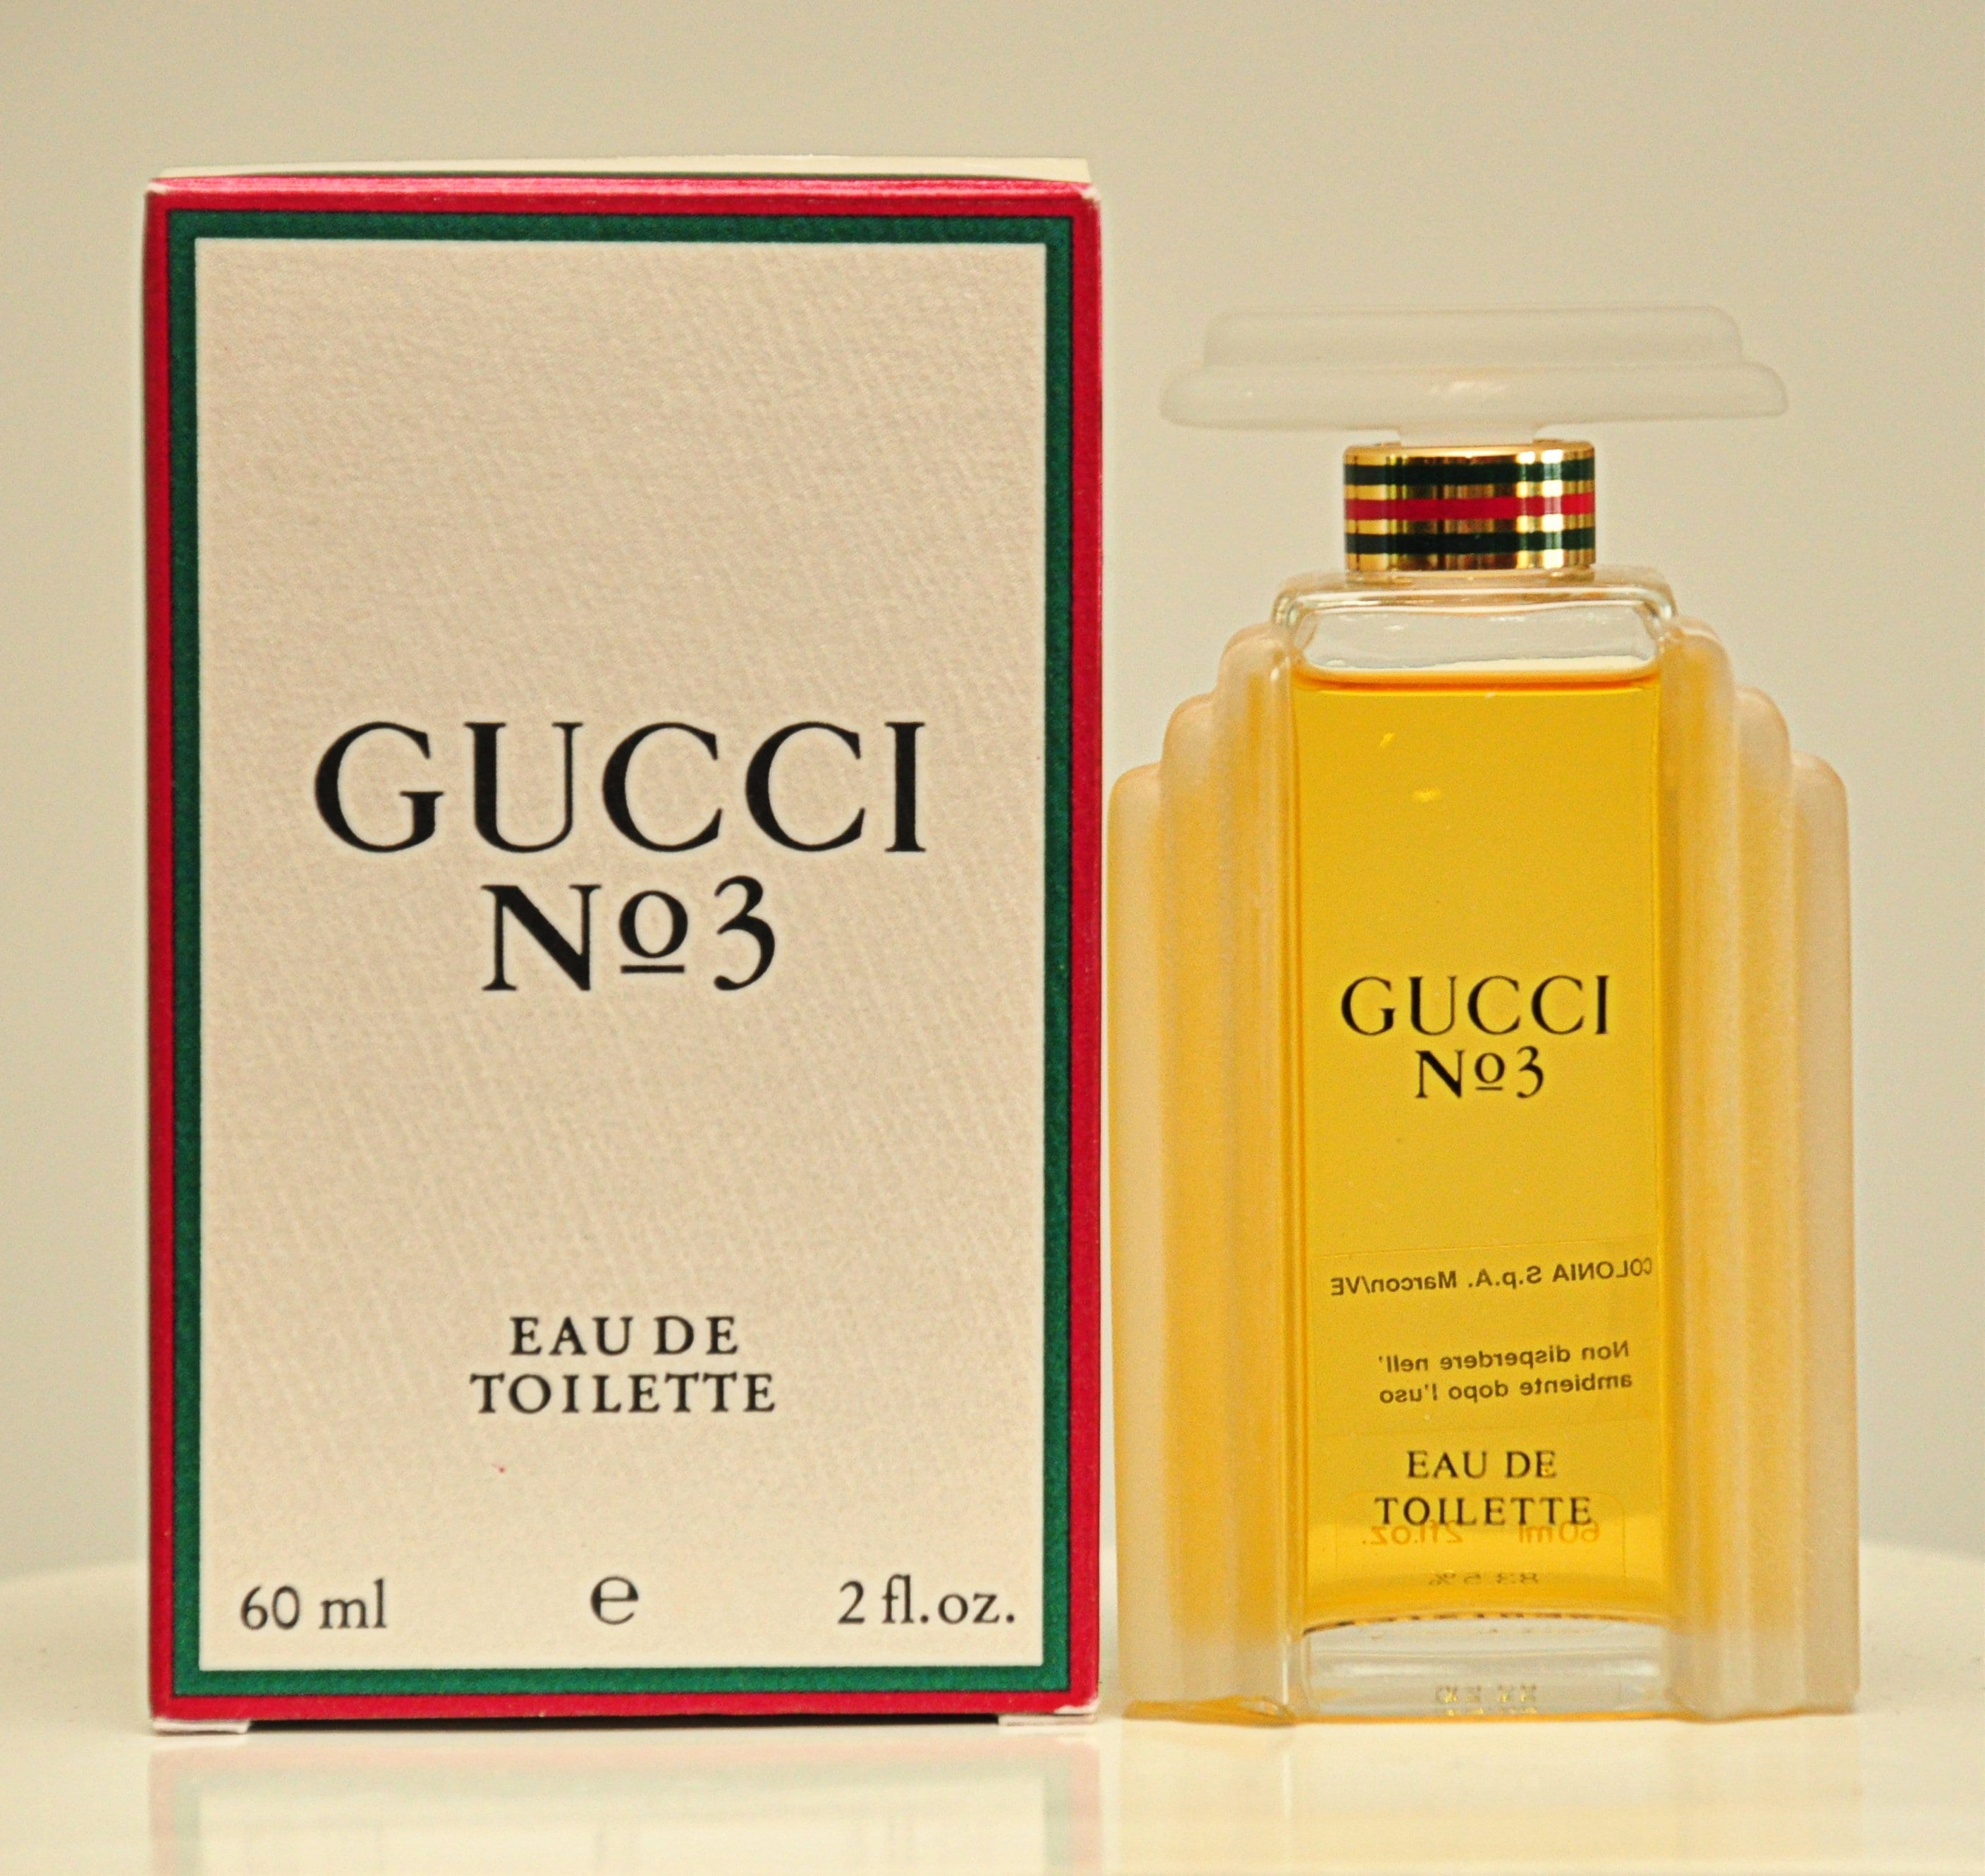 Gucci No 3 by Gucci Eau De Toilette Edt 60ml 2 Fl. Oz. Splash - Etsy